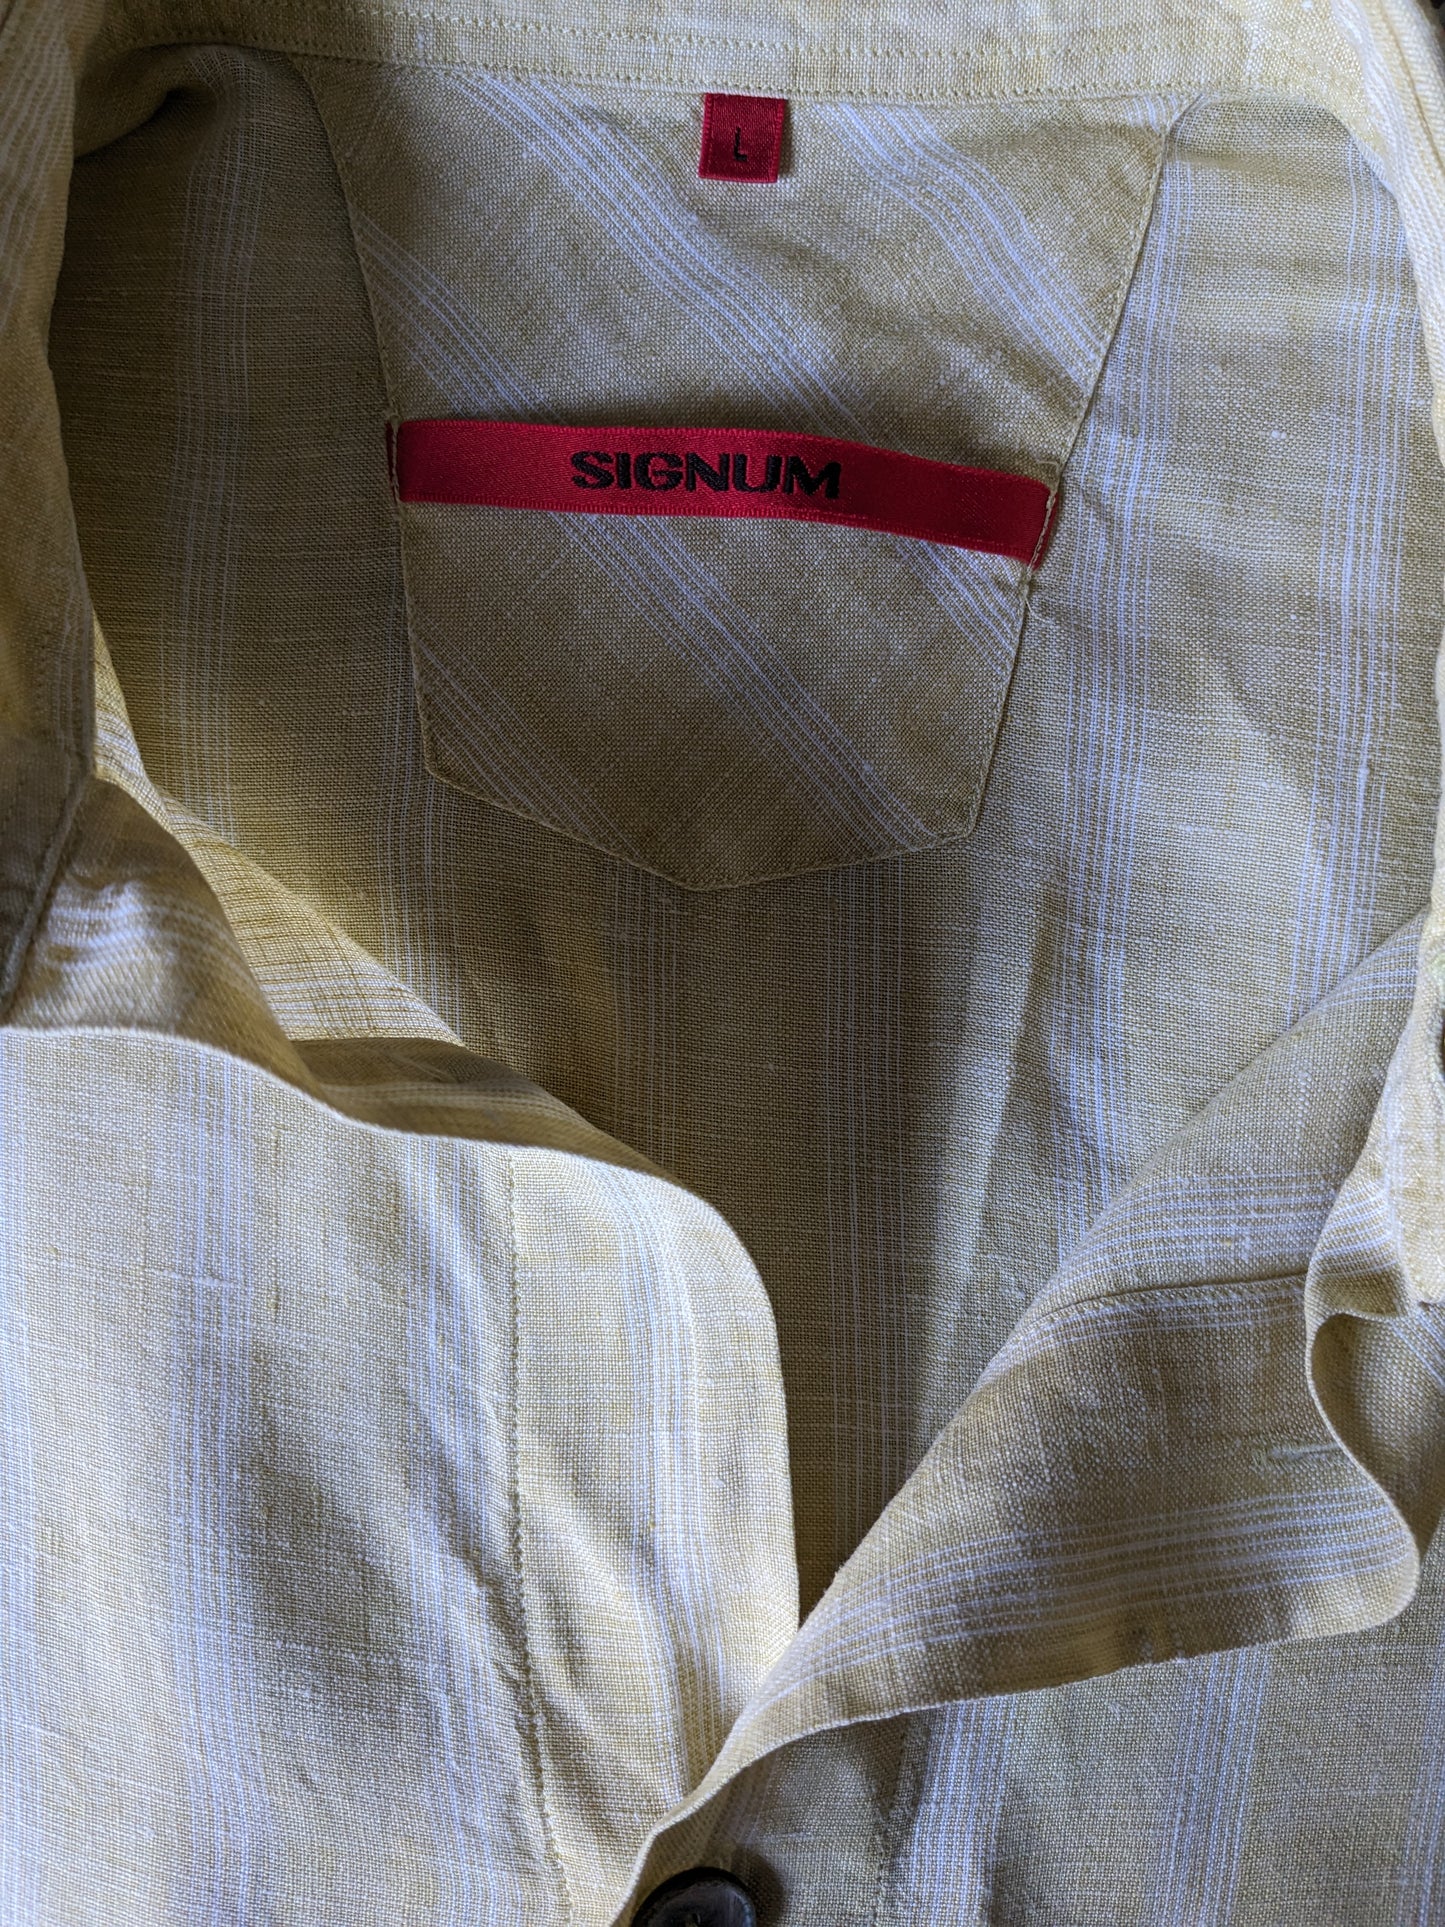 Camisa de lino vintage manga corta. Botones más grandes. Amarillo blanco a cuadros. Tamaño L / XL.